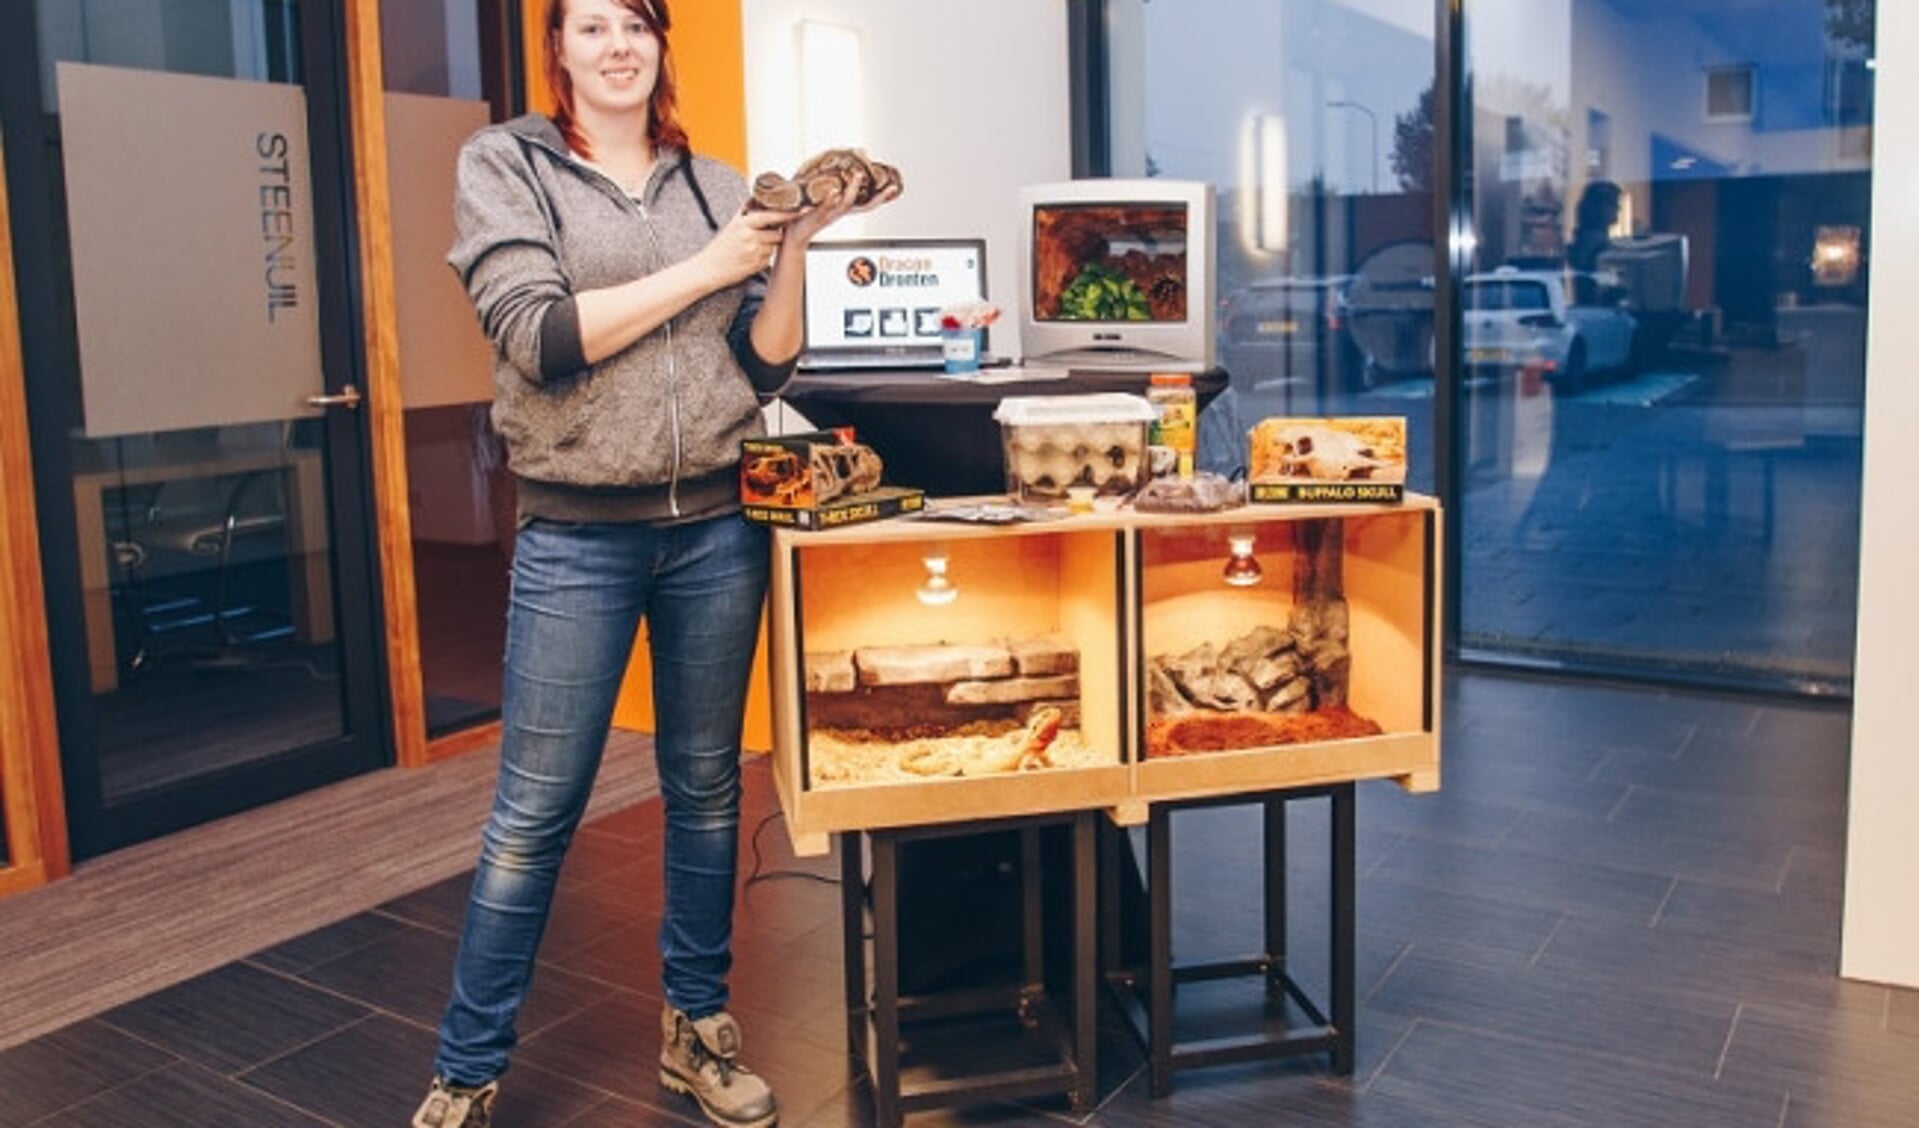  Deelnemer Karlijn Snakenborg startte haar eigen reptielenwinkel DragonDronten.